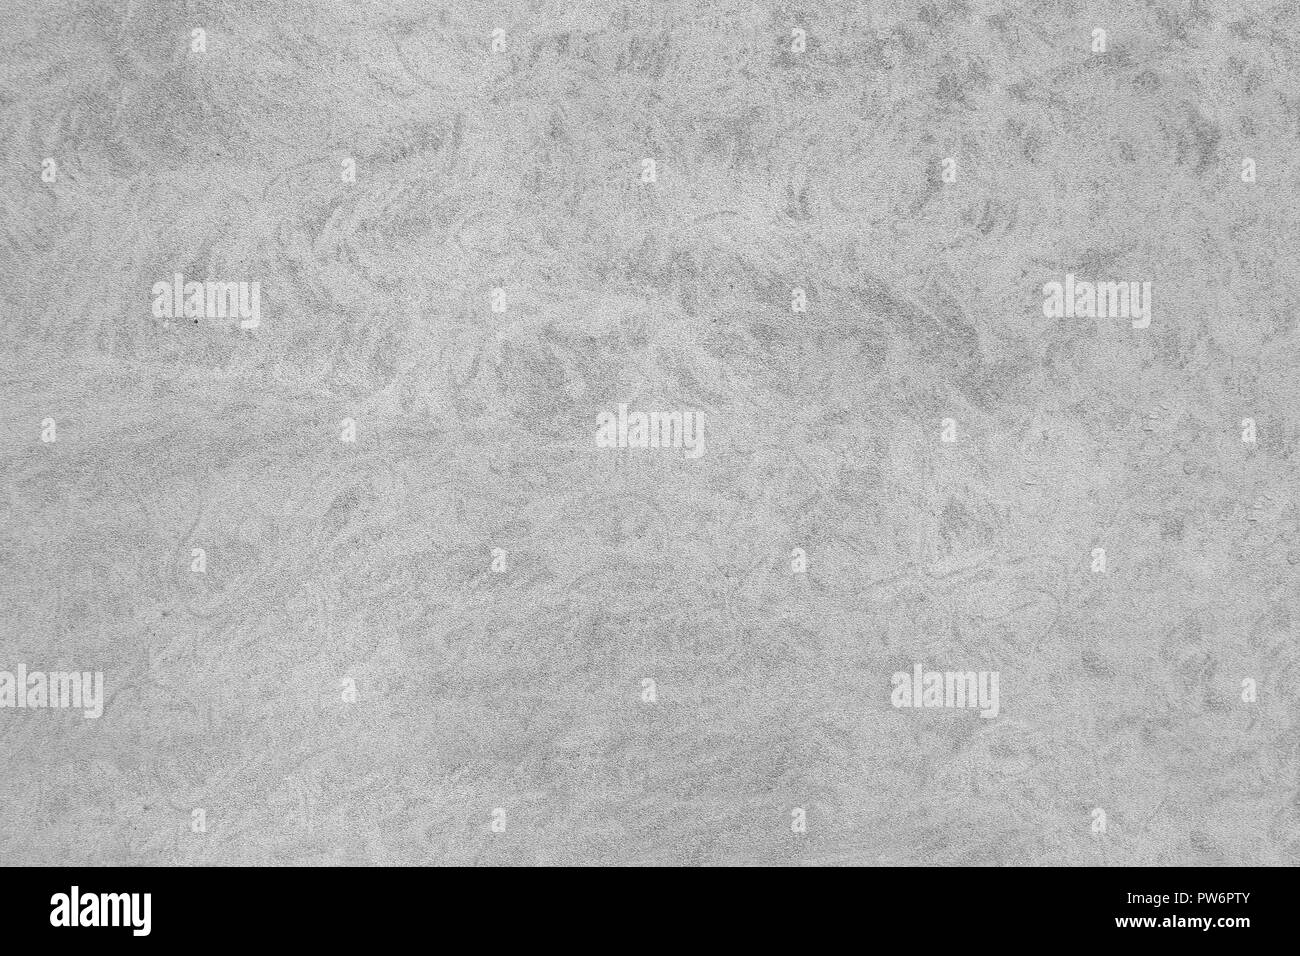 Ciment Blanc gris texturé mur de maçonnerie surface plancher historique Banque D'Images